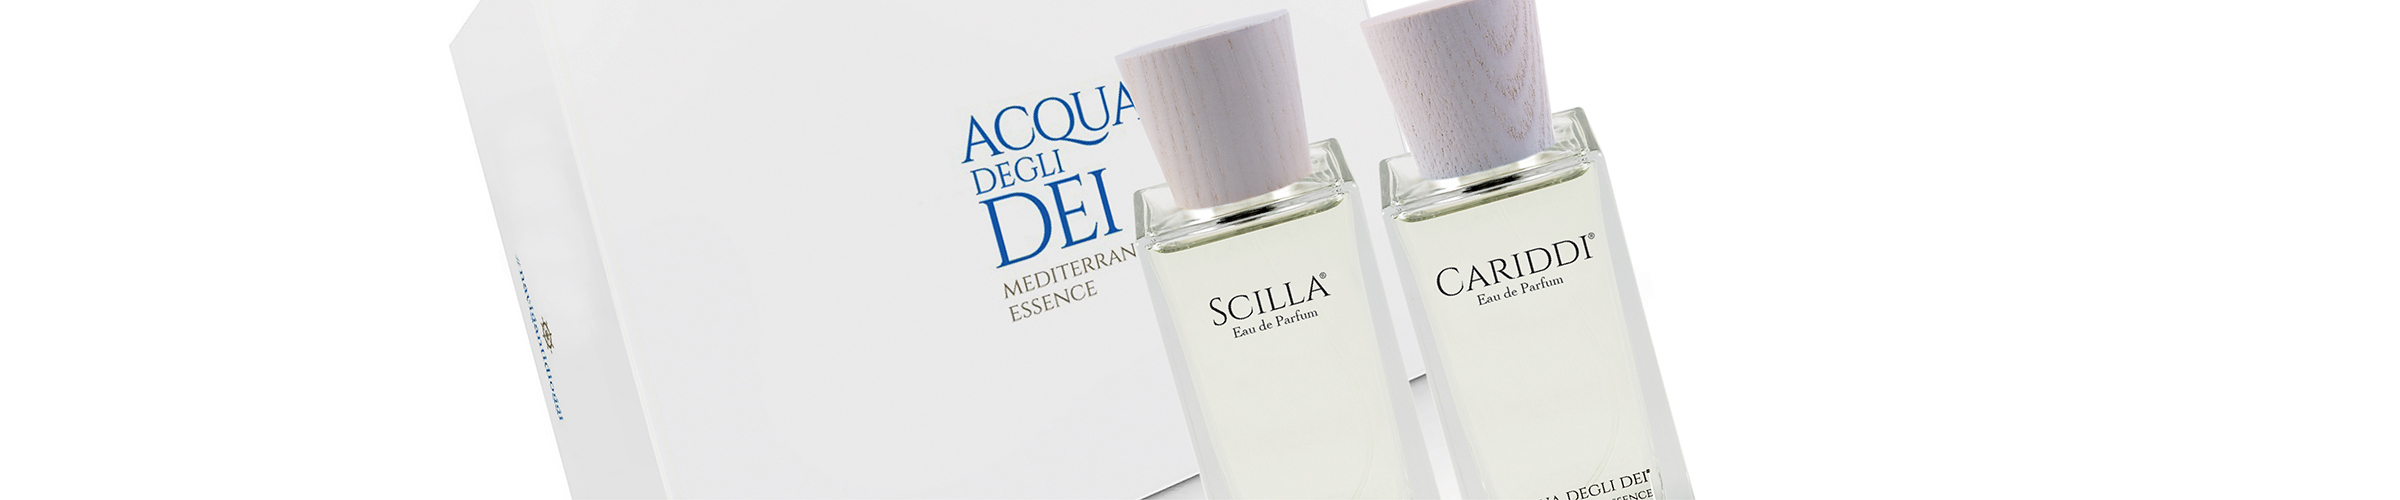 Die beiden Eau de Parfums Scilla und Cariddi im 30ml-Format, aufbewahrt in der edlen Geschenkverpackung.